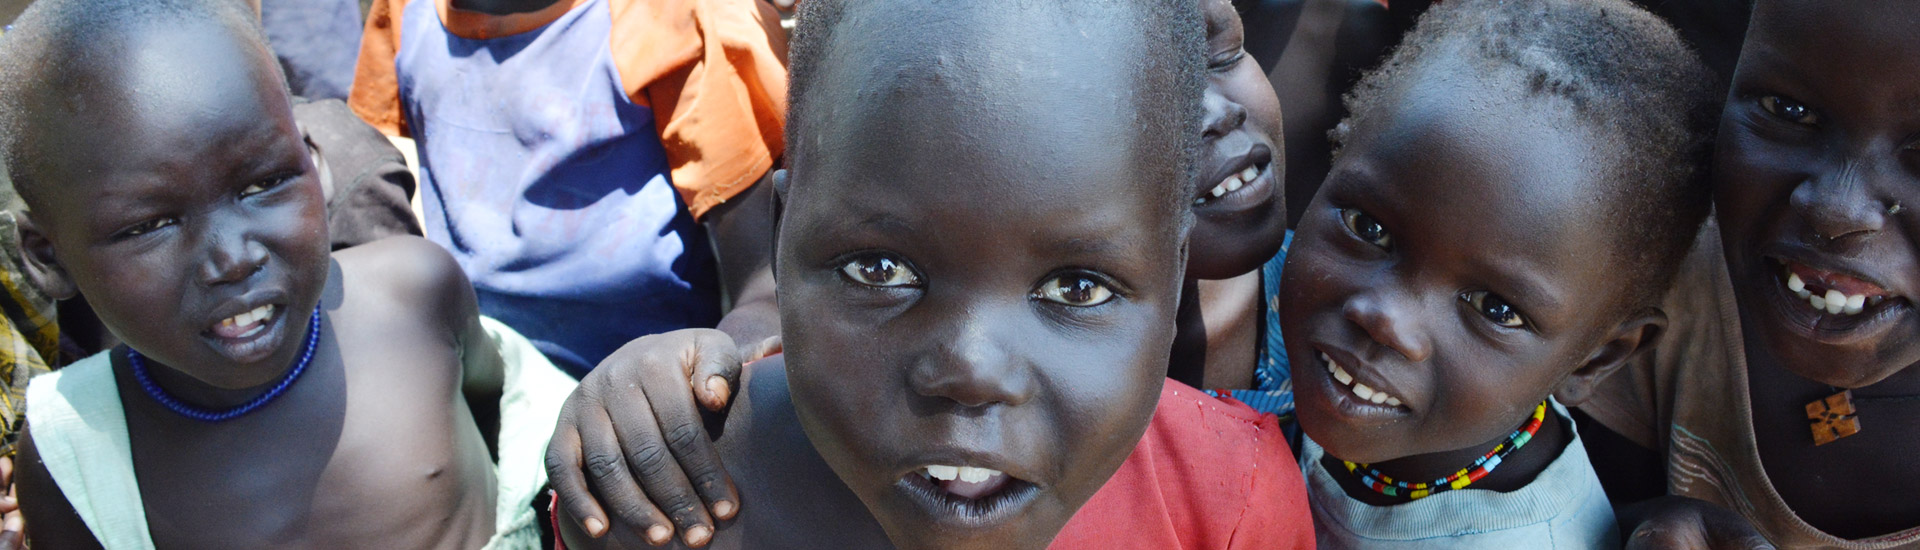 Malnutrición en Gumbo, Sudán del Sur